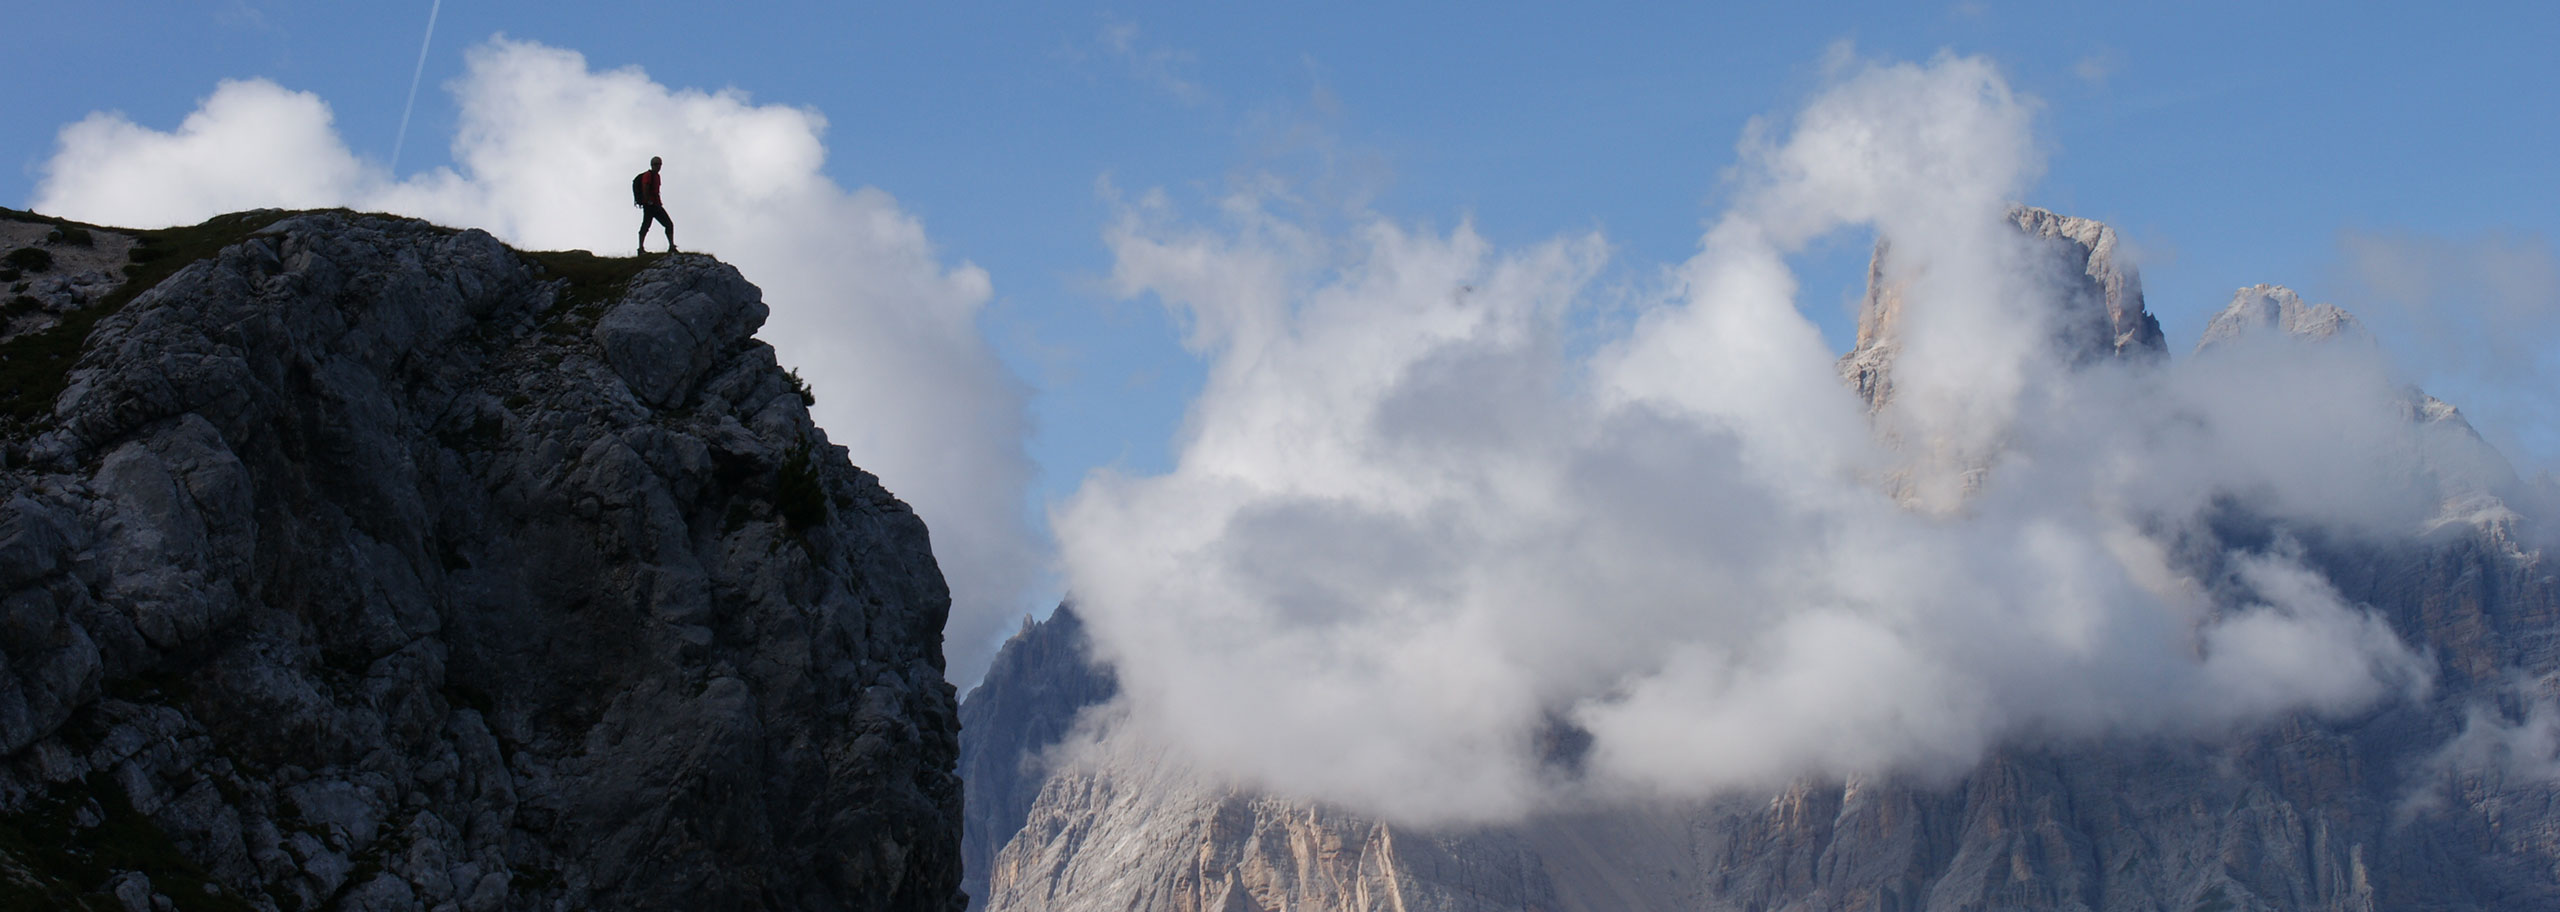 Trekking in Dolomiti con le Guide Alpine della Val di Fassa